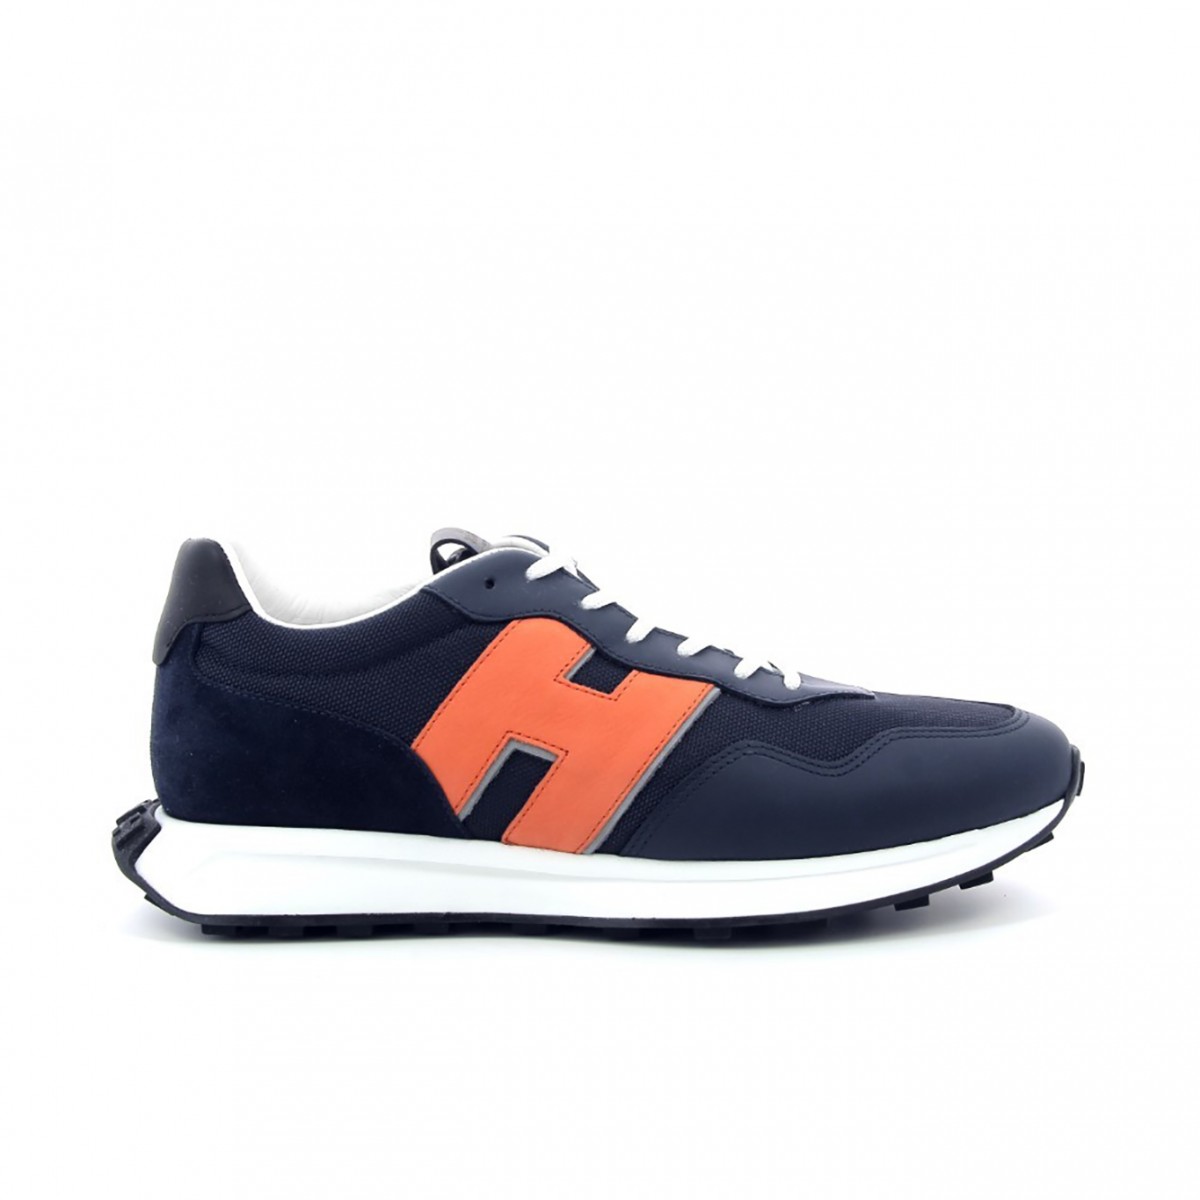 Hogan H601 man sneakers